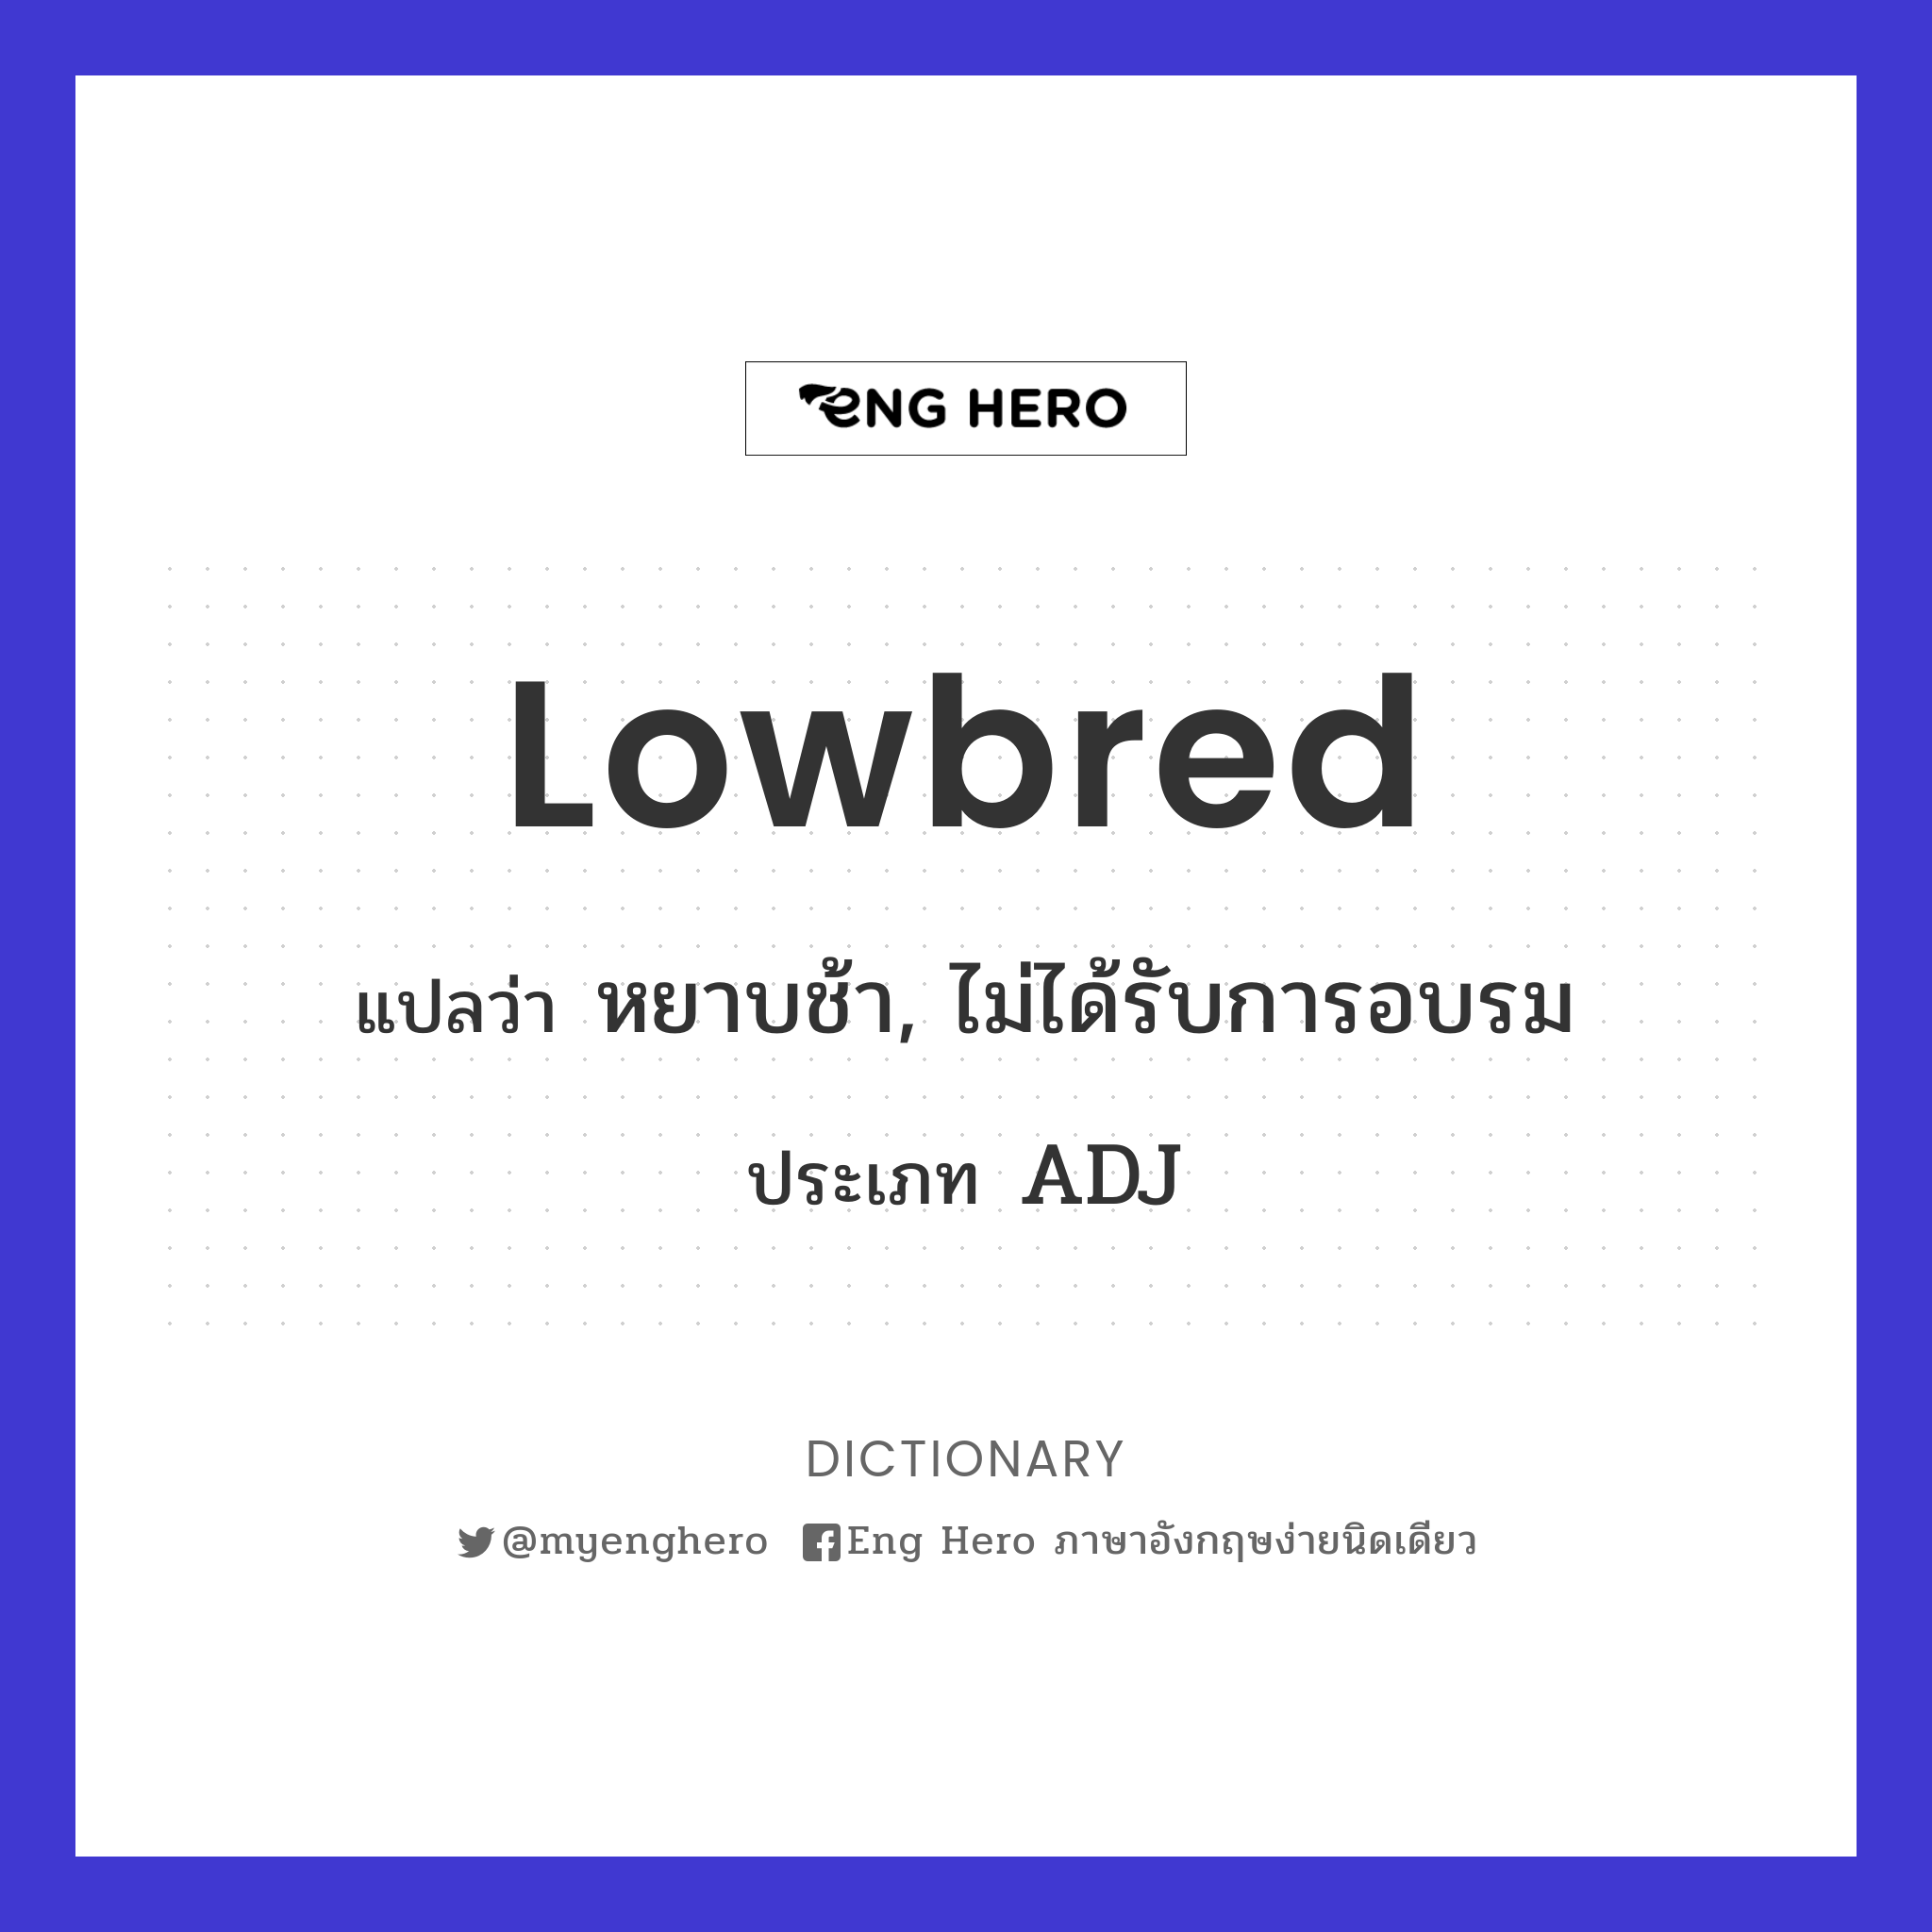 lowbred